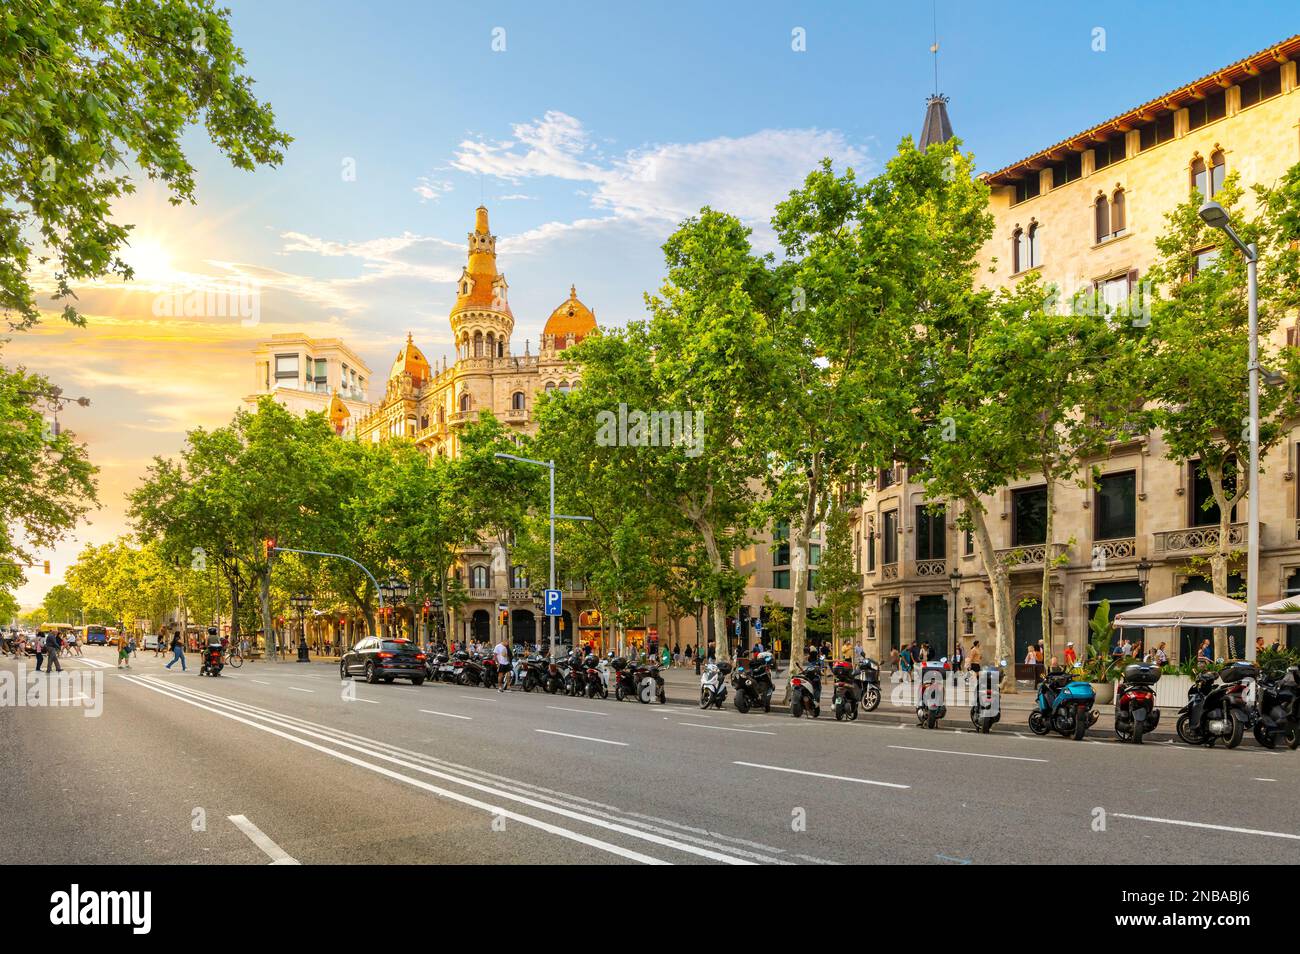 Le soleil se couche sur le bâtiment cas Antoni Rocamora et l'avenue Paseo de Gracia en face de la Plaza de Catalunya dans le quartier Eixample, Barcelone Espagne Banque D'Images